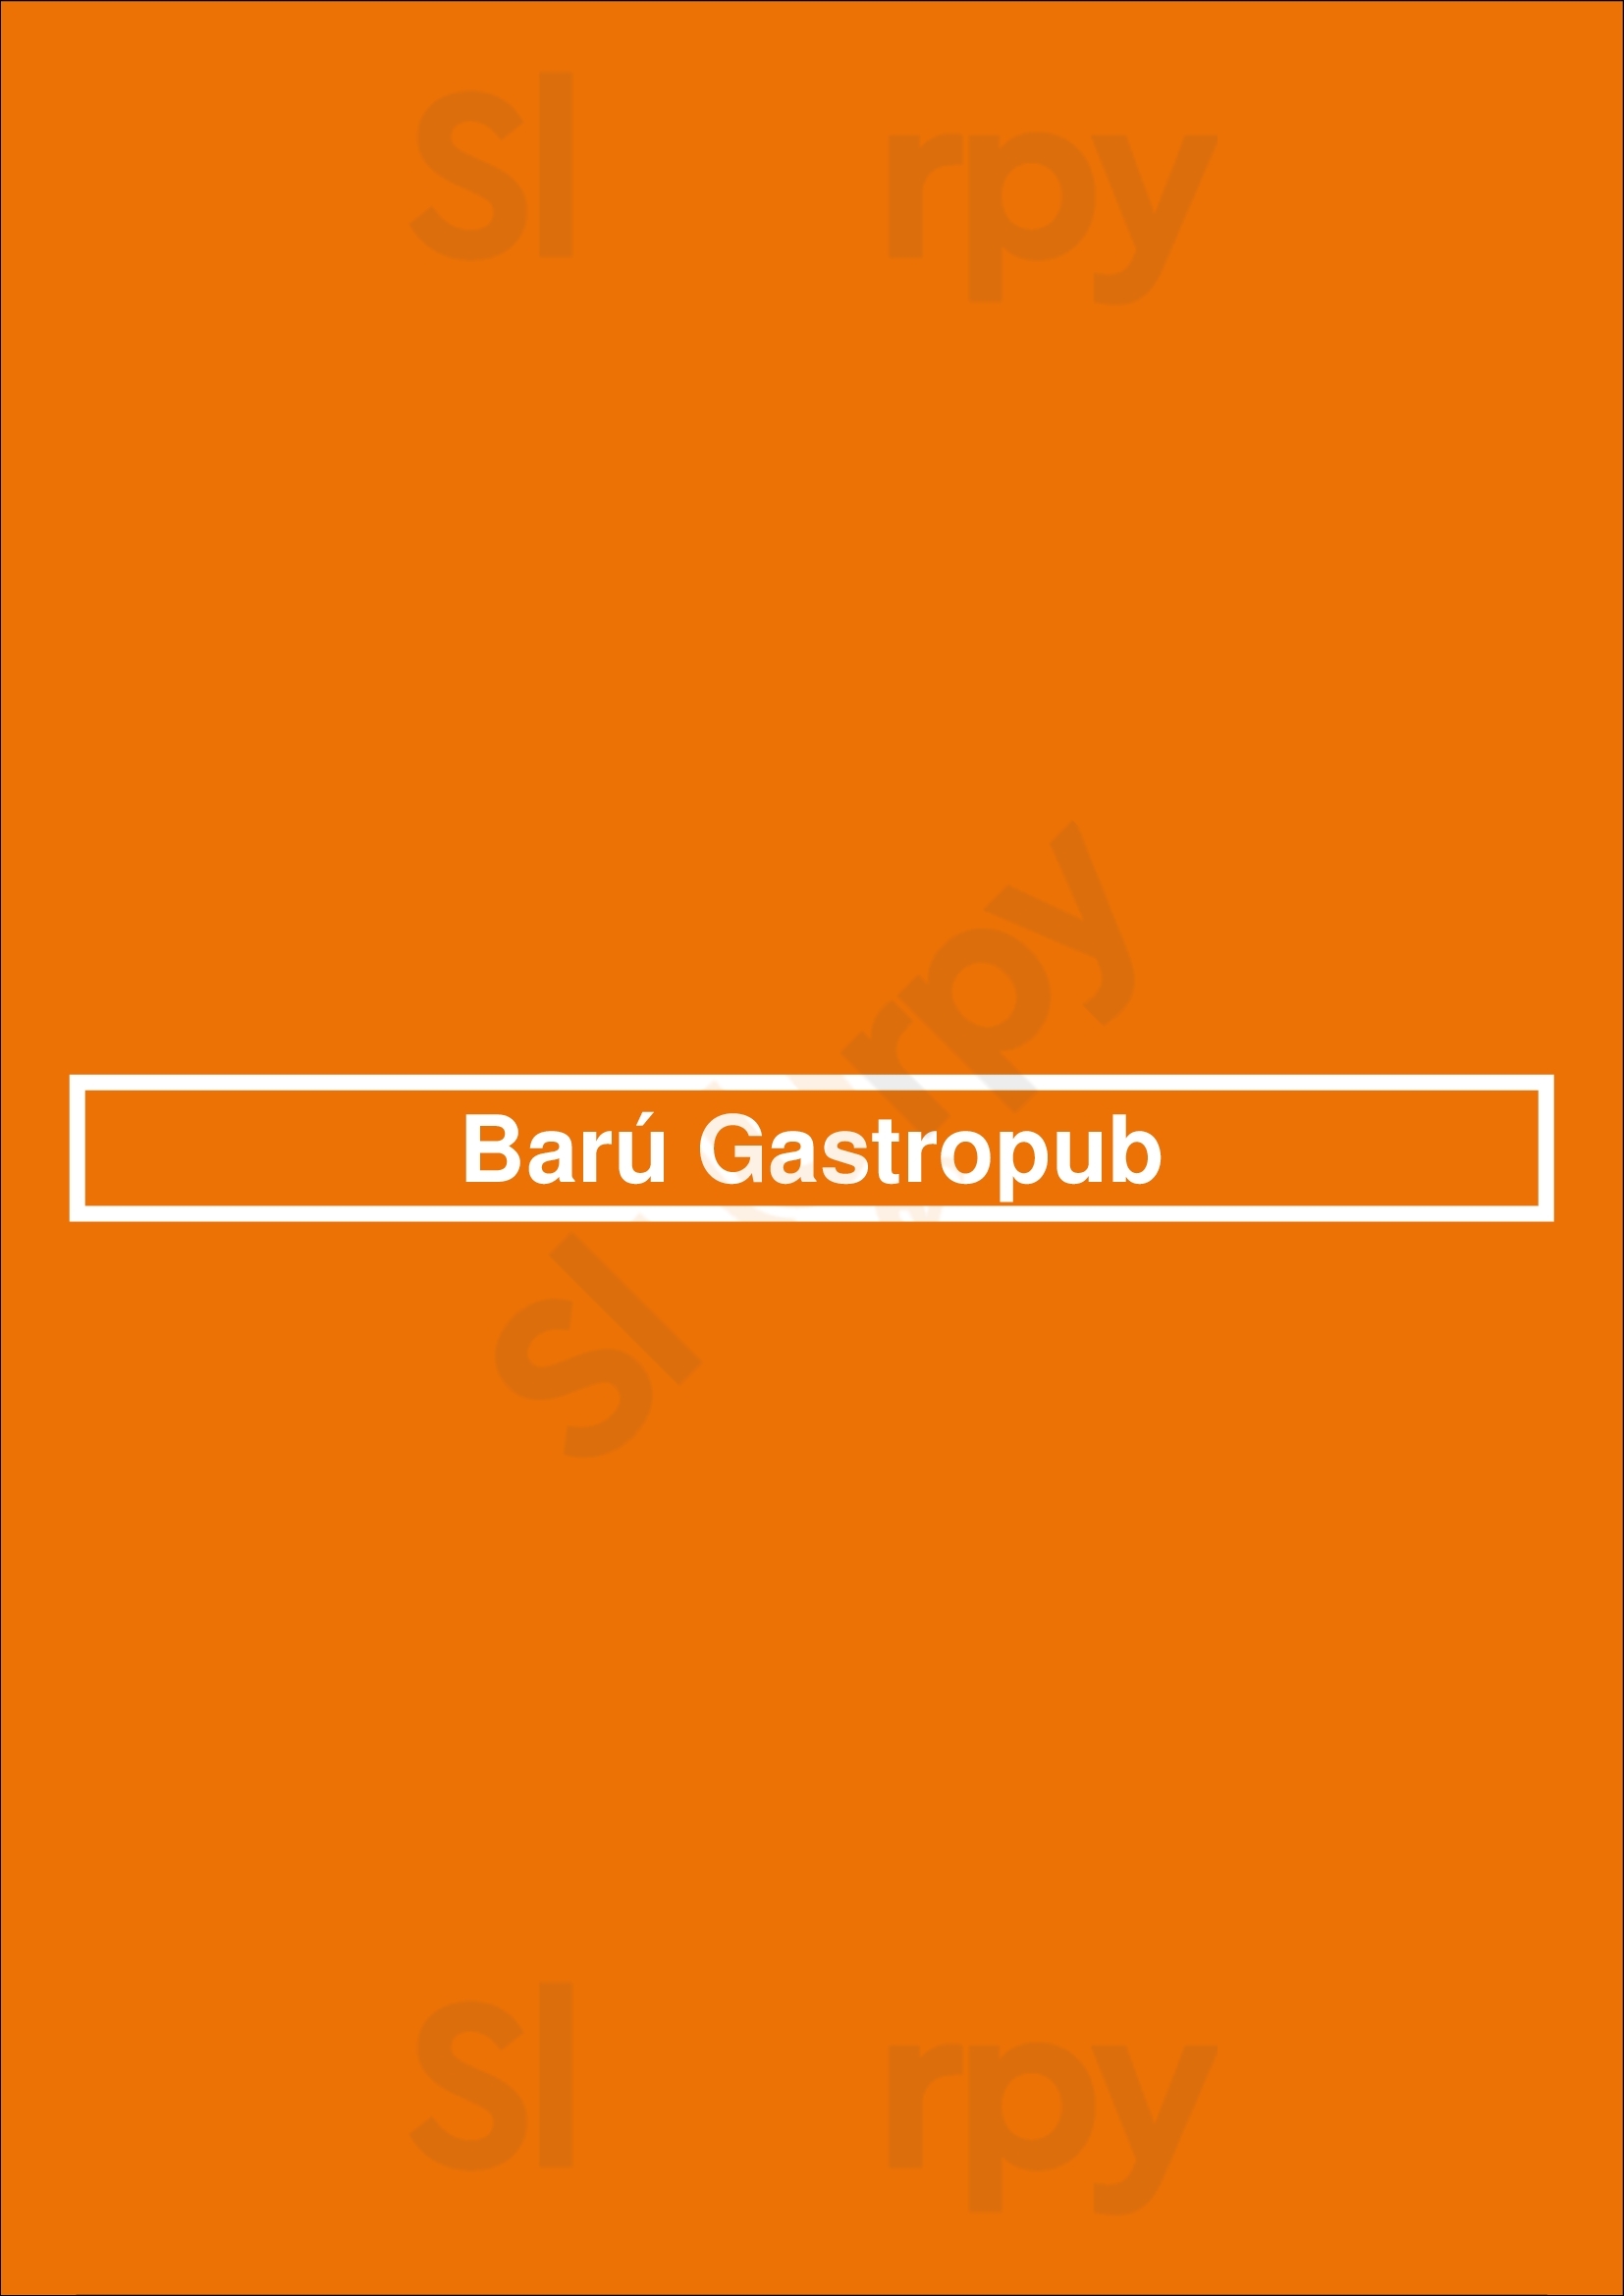 Barú Gastropub Buenos Aires Menu - 1